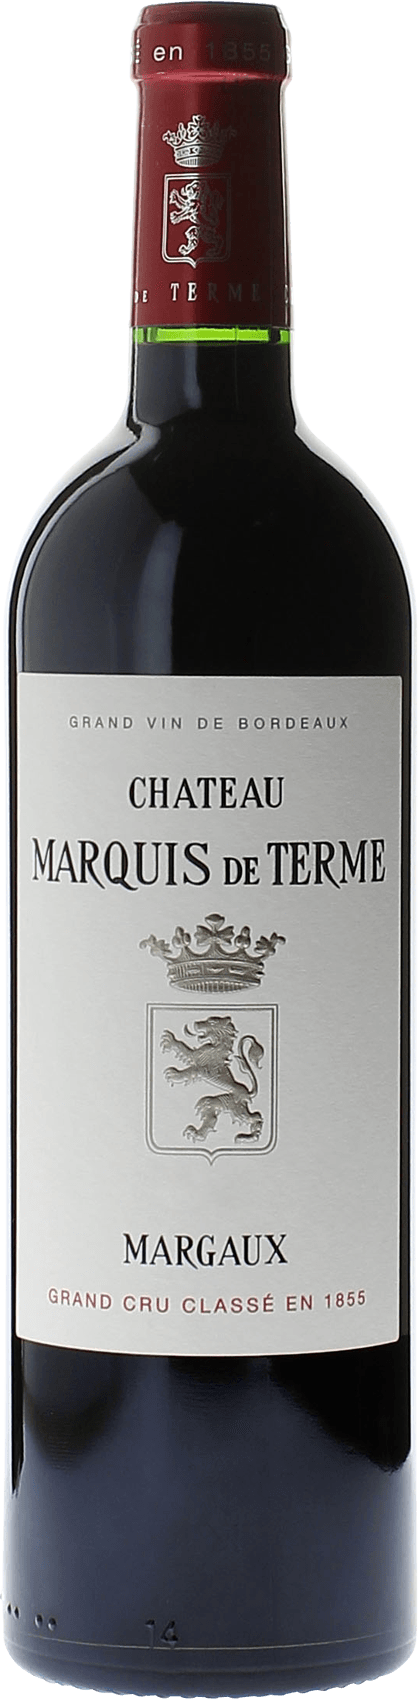 Marquis de terme 2005 4me Grand cru class Margaux, Bordeaux rouge